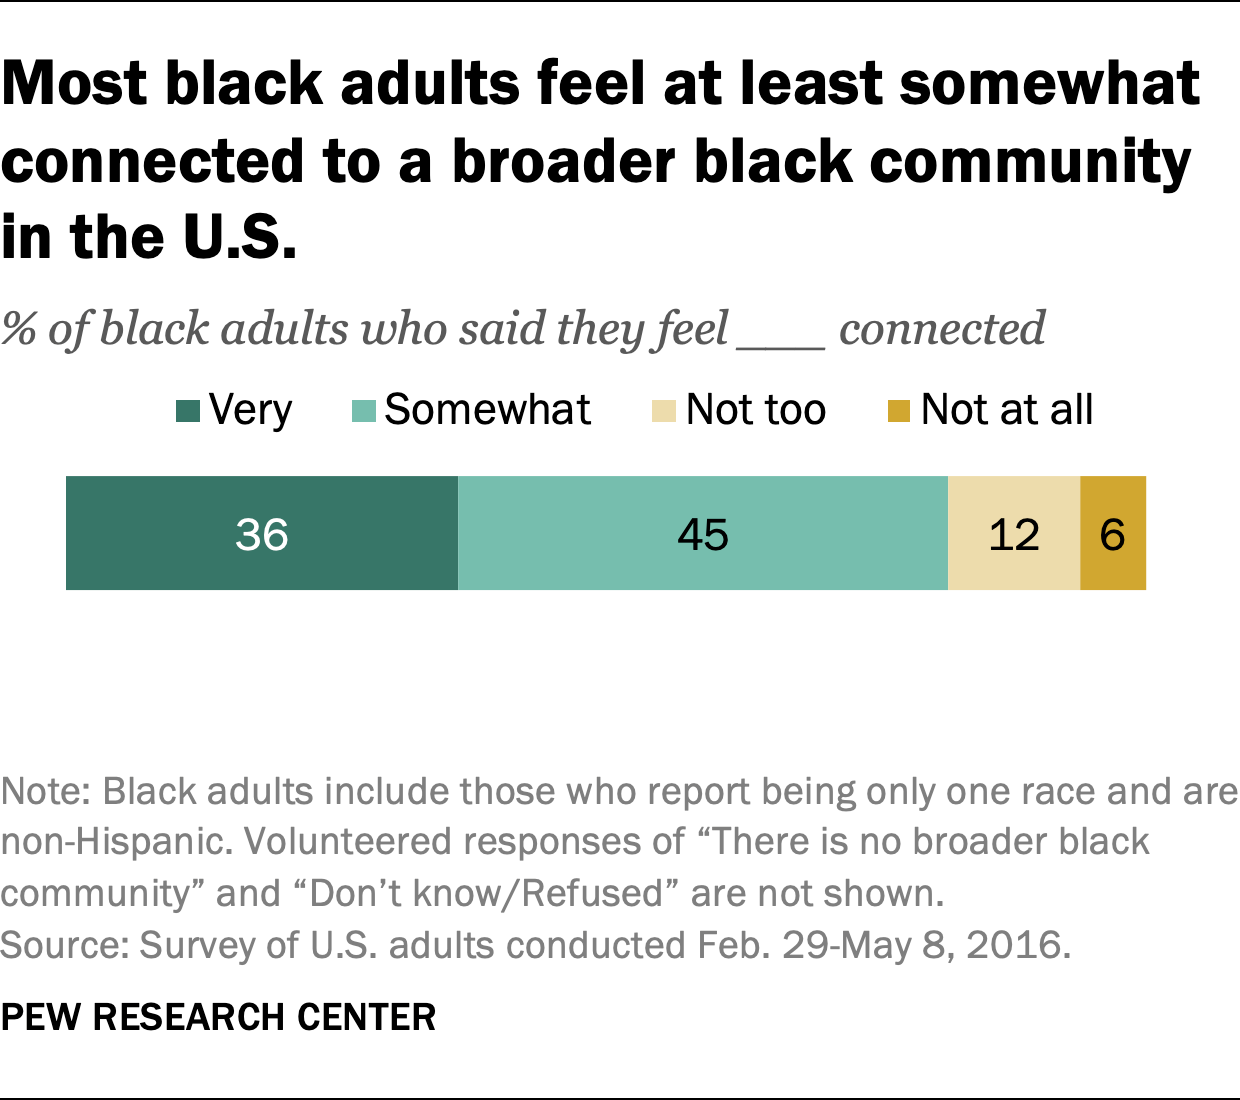 La plupart des adultes noirs se sentent au moins quelque peu connectés à une communauté noire plus large aux États-Unis.